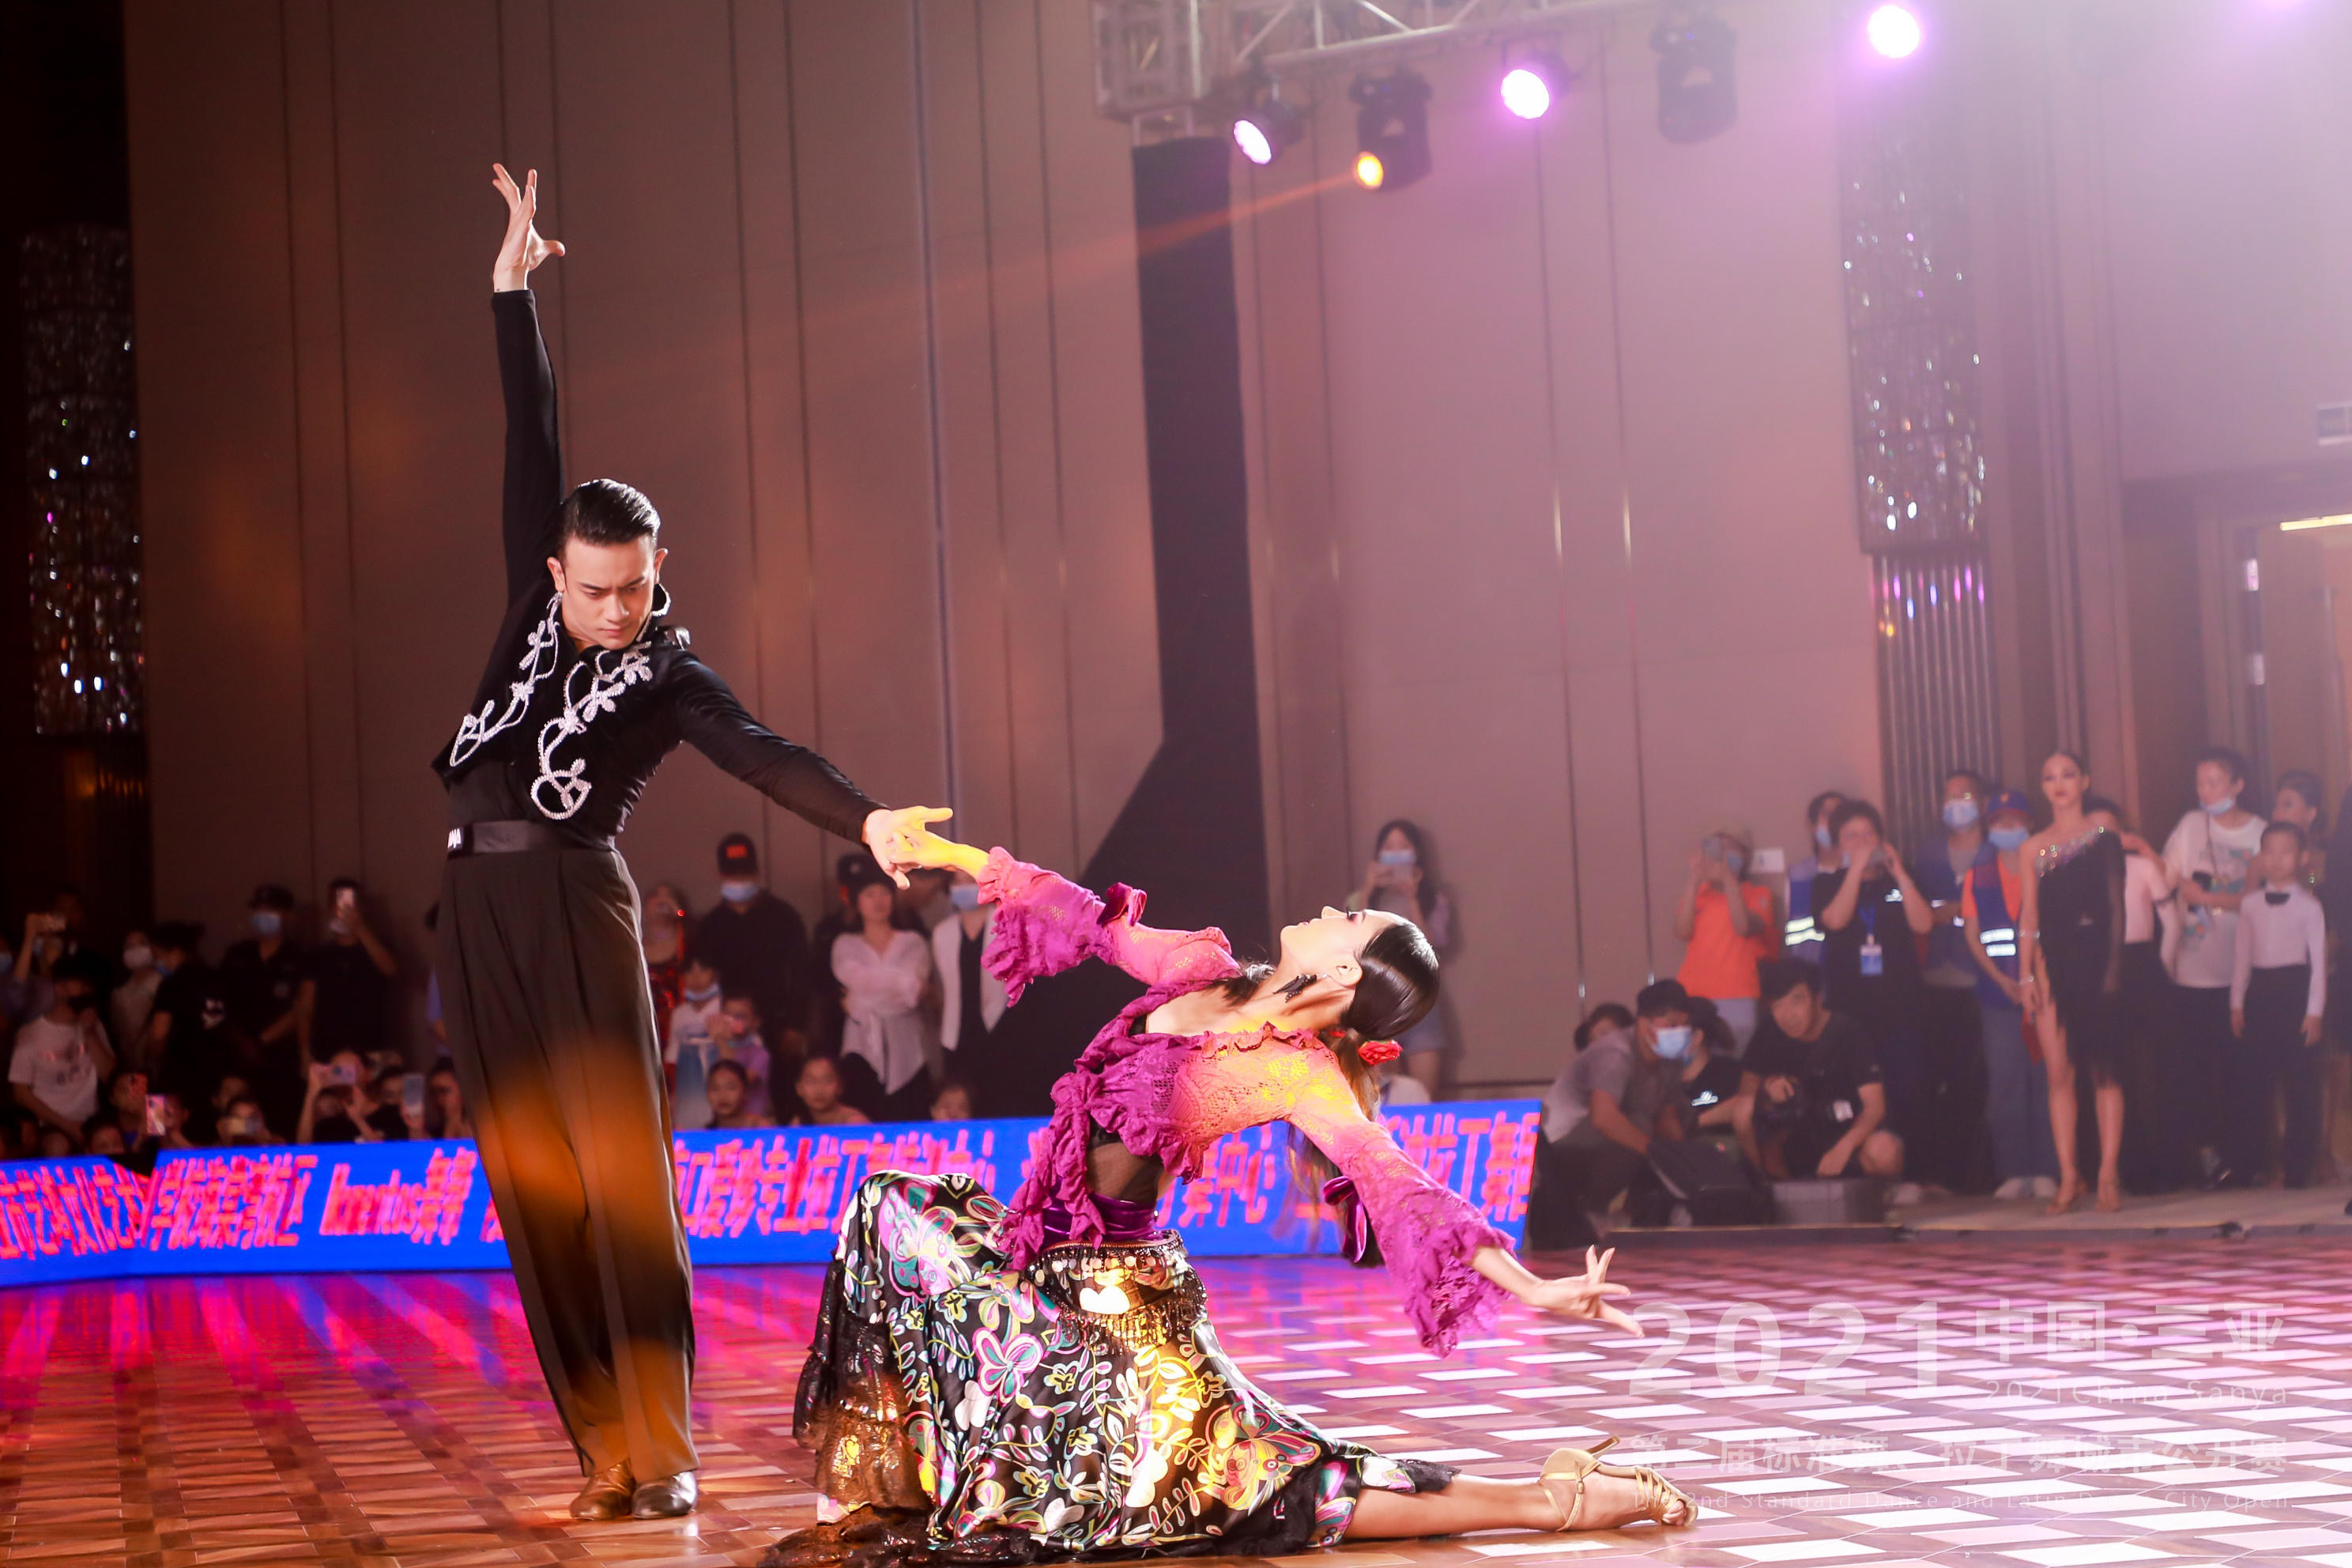 2021中国三亚第二届标准舞、拉丁舞城市公开赛成功举办